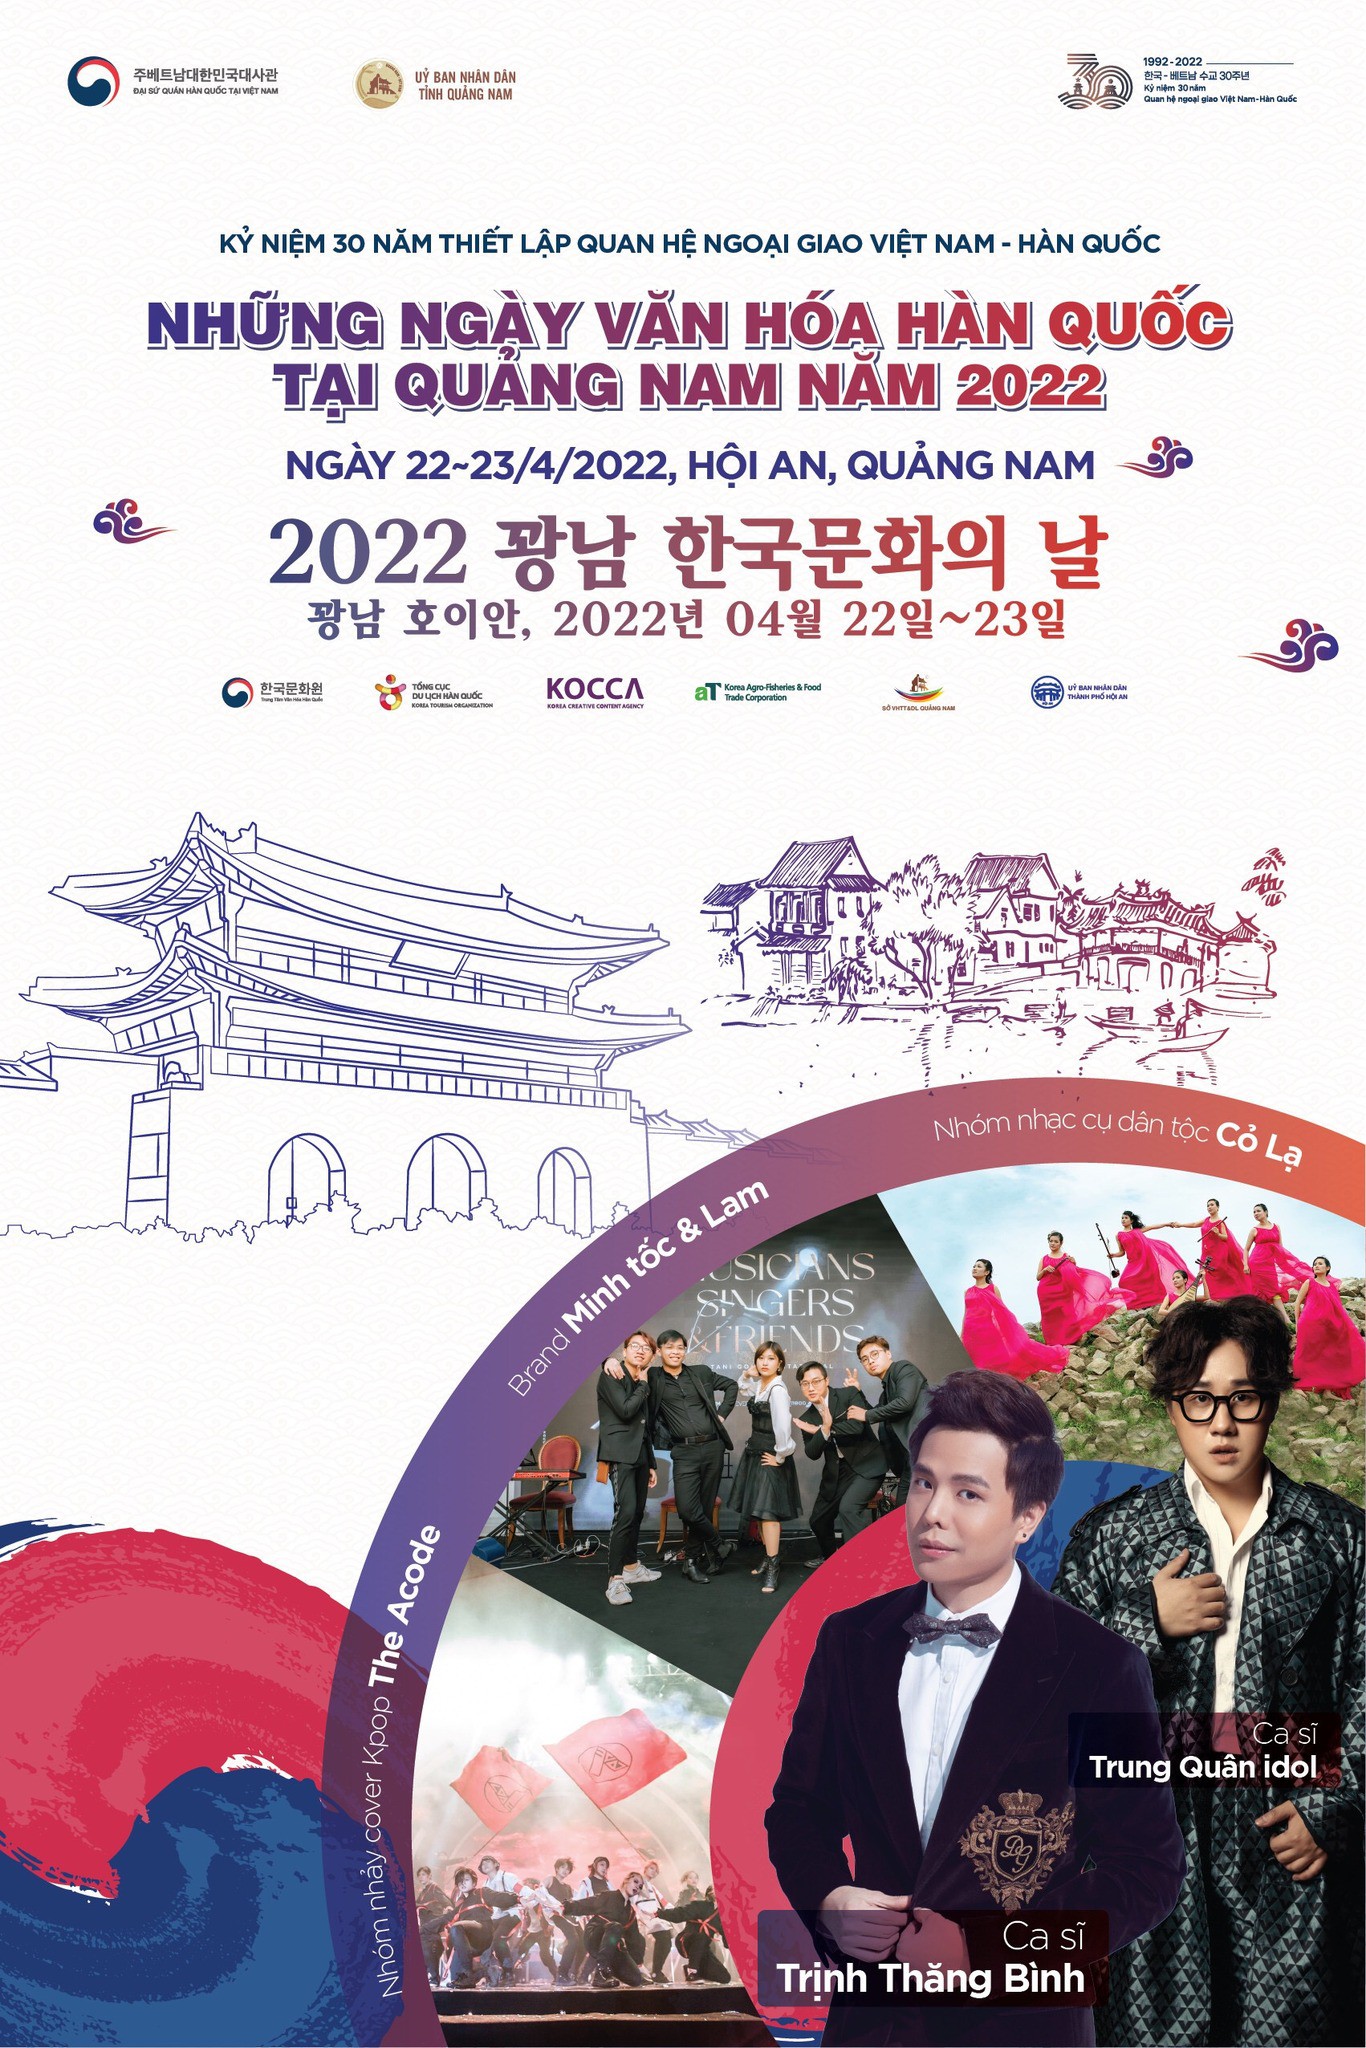 Chương trình - Những ngày văn hóa Hàn Quốc tại Quảng Nam năm 2022